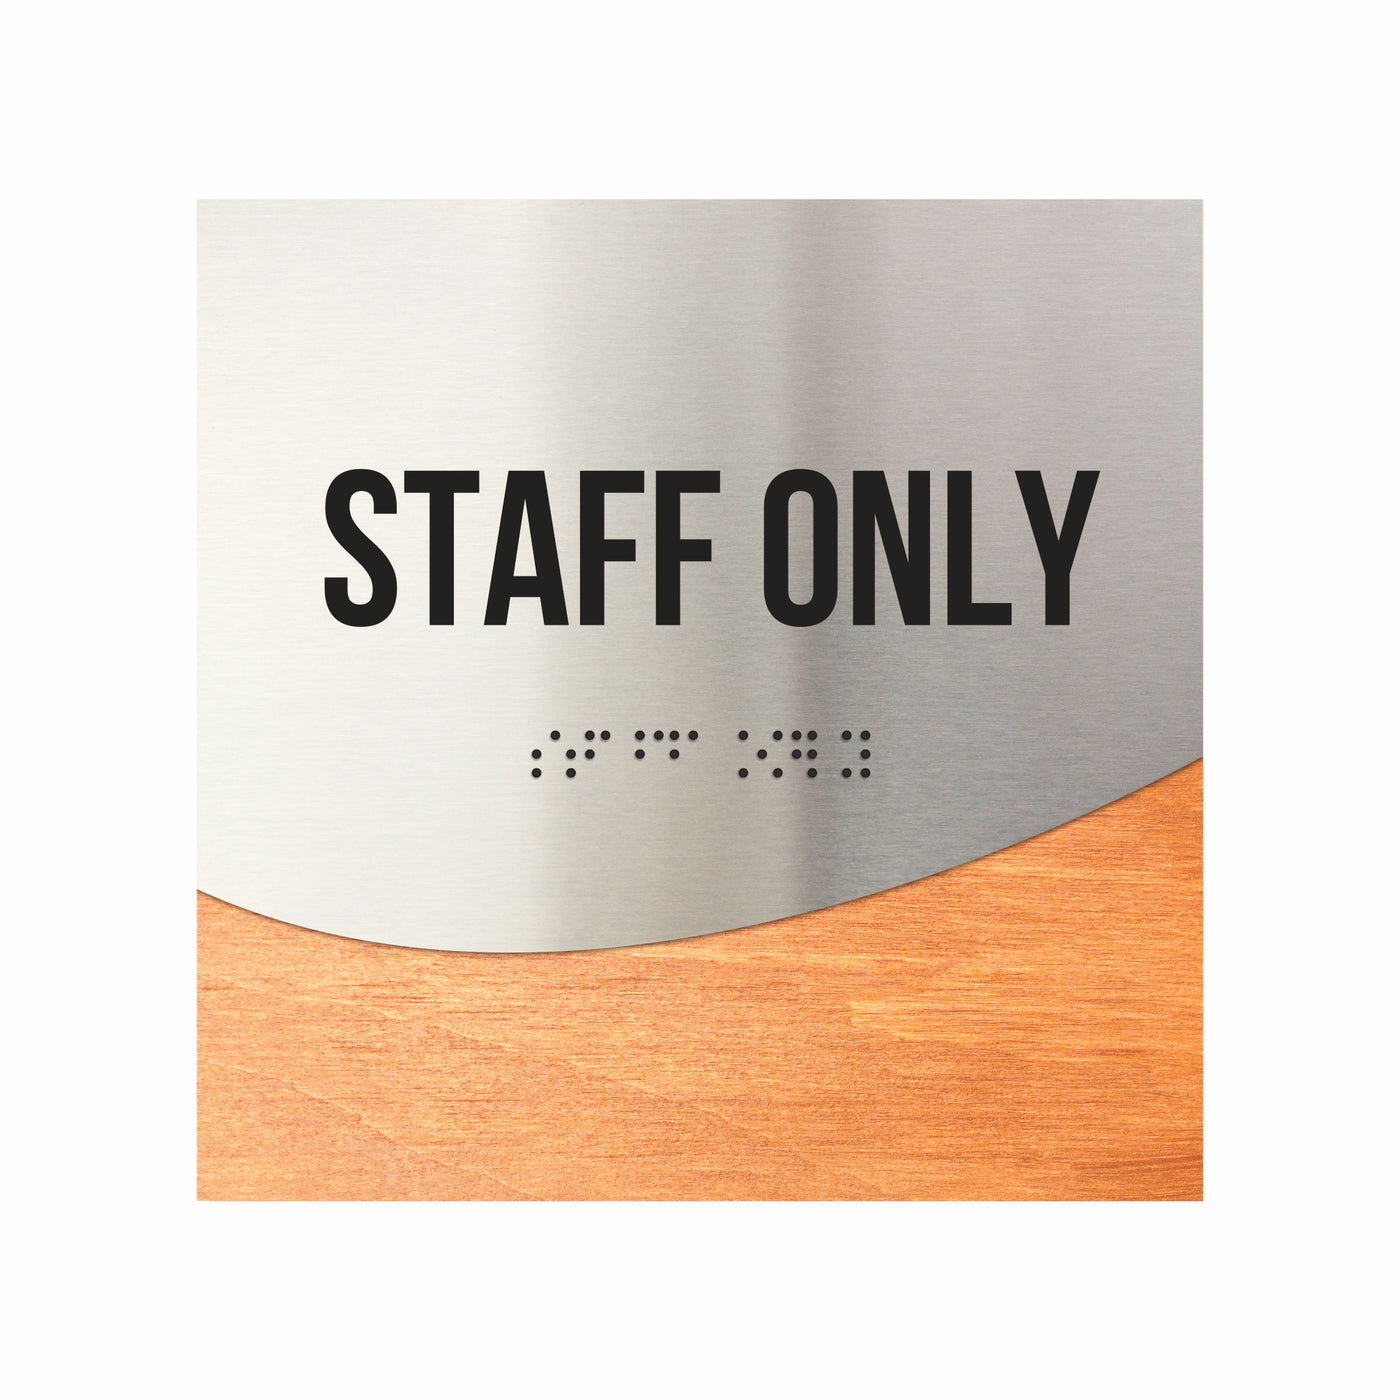 Staff Only Signage "Jure" Design